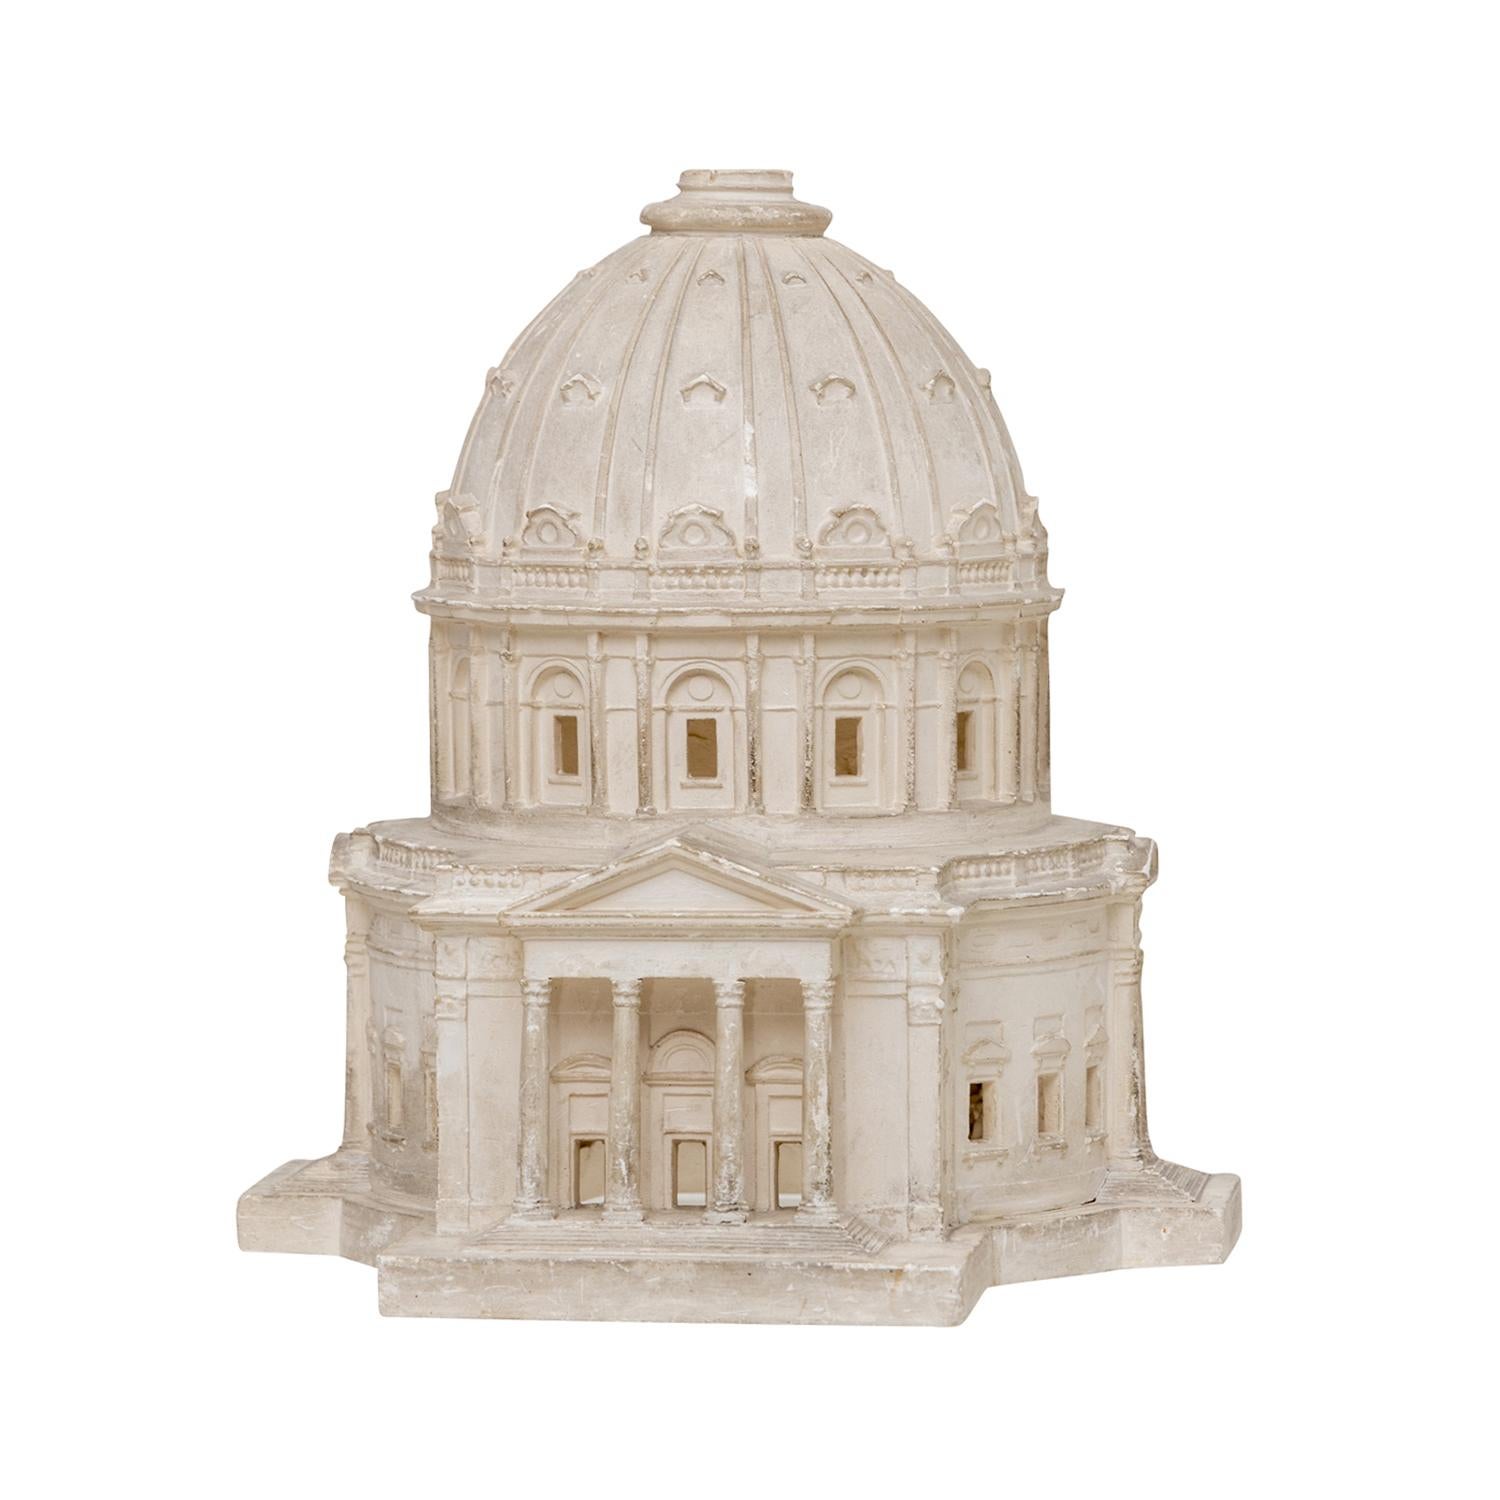 Une maquette d'architecture belge ancienne, blanche, en plâtre de Paris travaillé à la main, en bon état. Elle représente l'église Frederik's à Copenhague, au Danemark. L'entrée principale de la cathédrale détaillée est accessible par un large